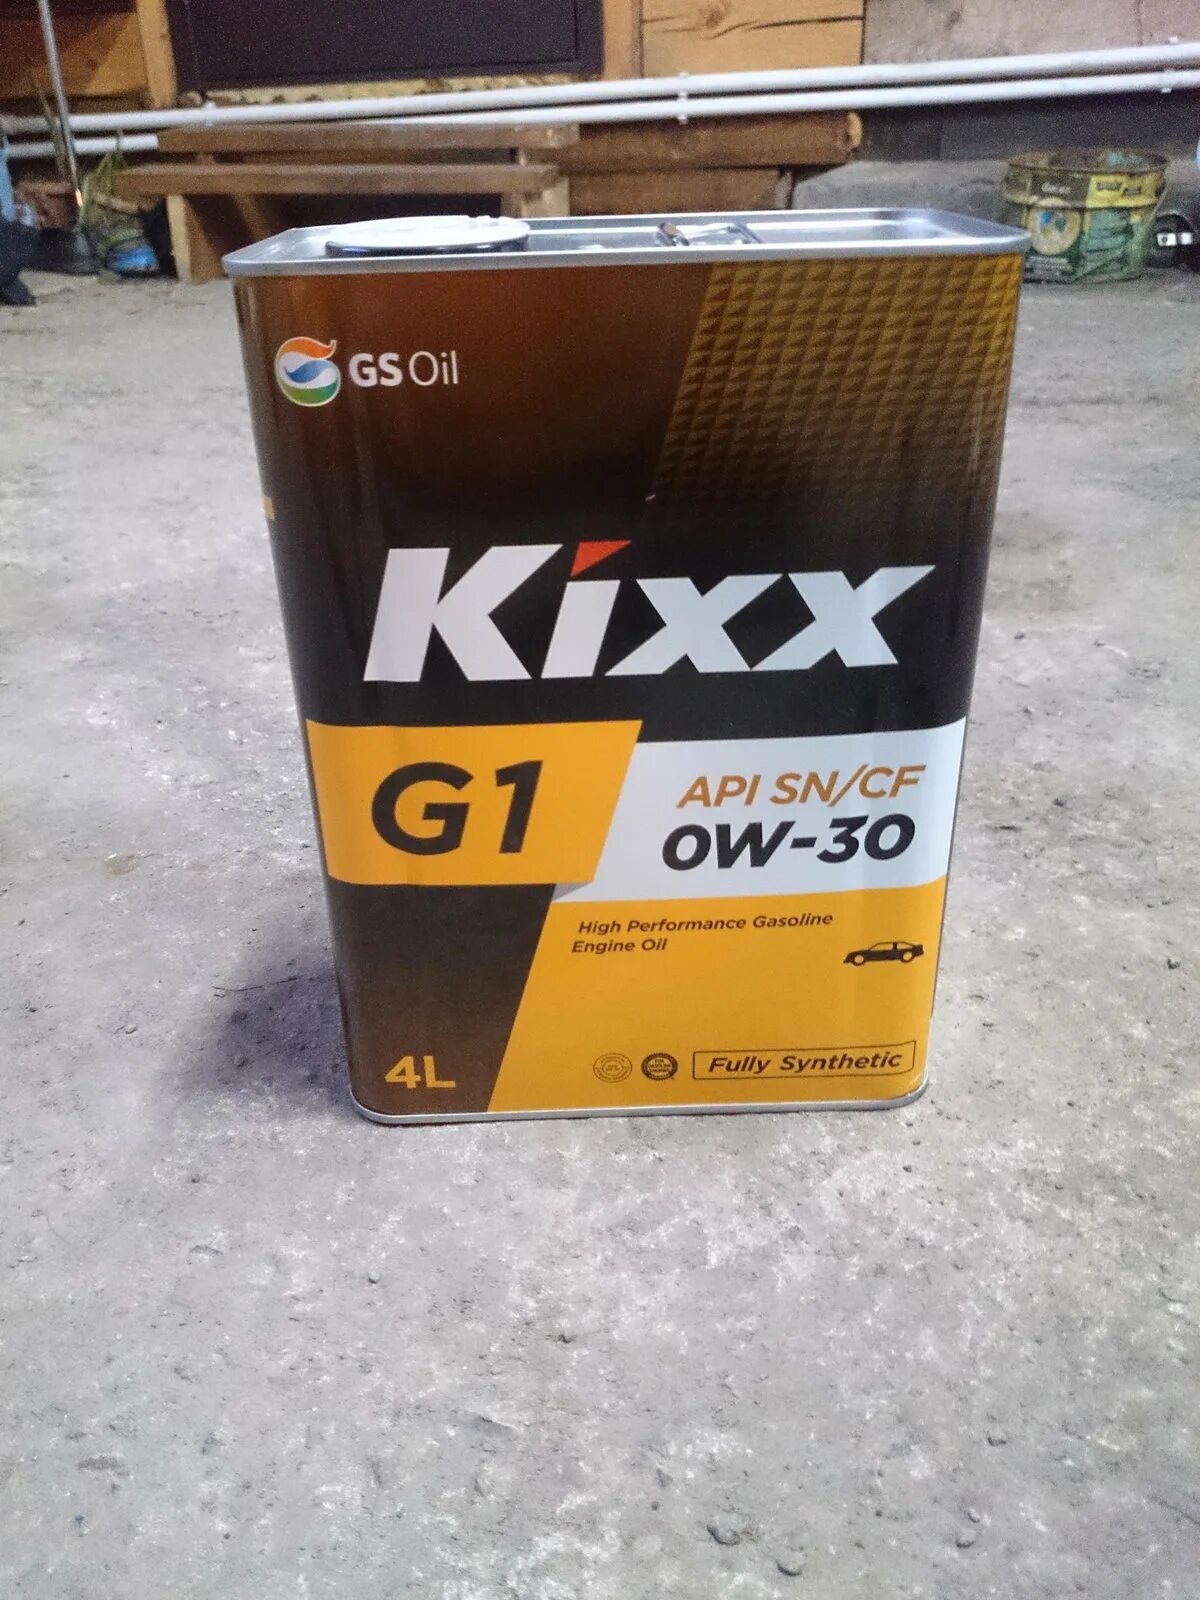 Kixx pao 1. Kixx g1 0w-30. Масло Кикс 0w30. Kixx g1 SN 0w-30. Кикс ПАО 5w30.